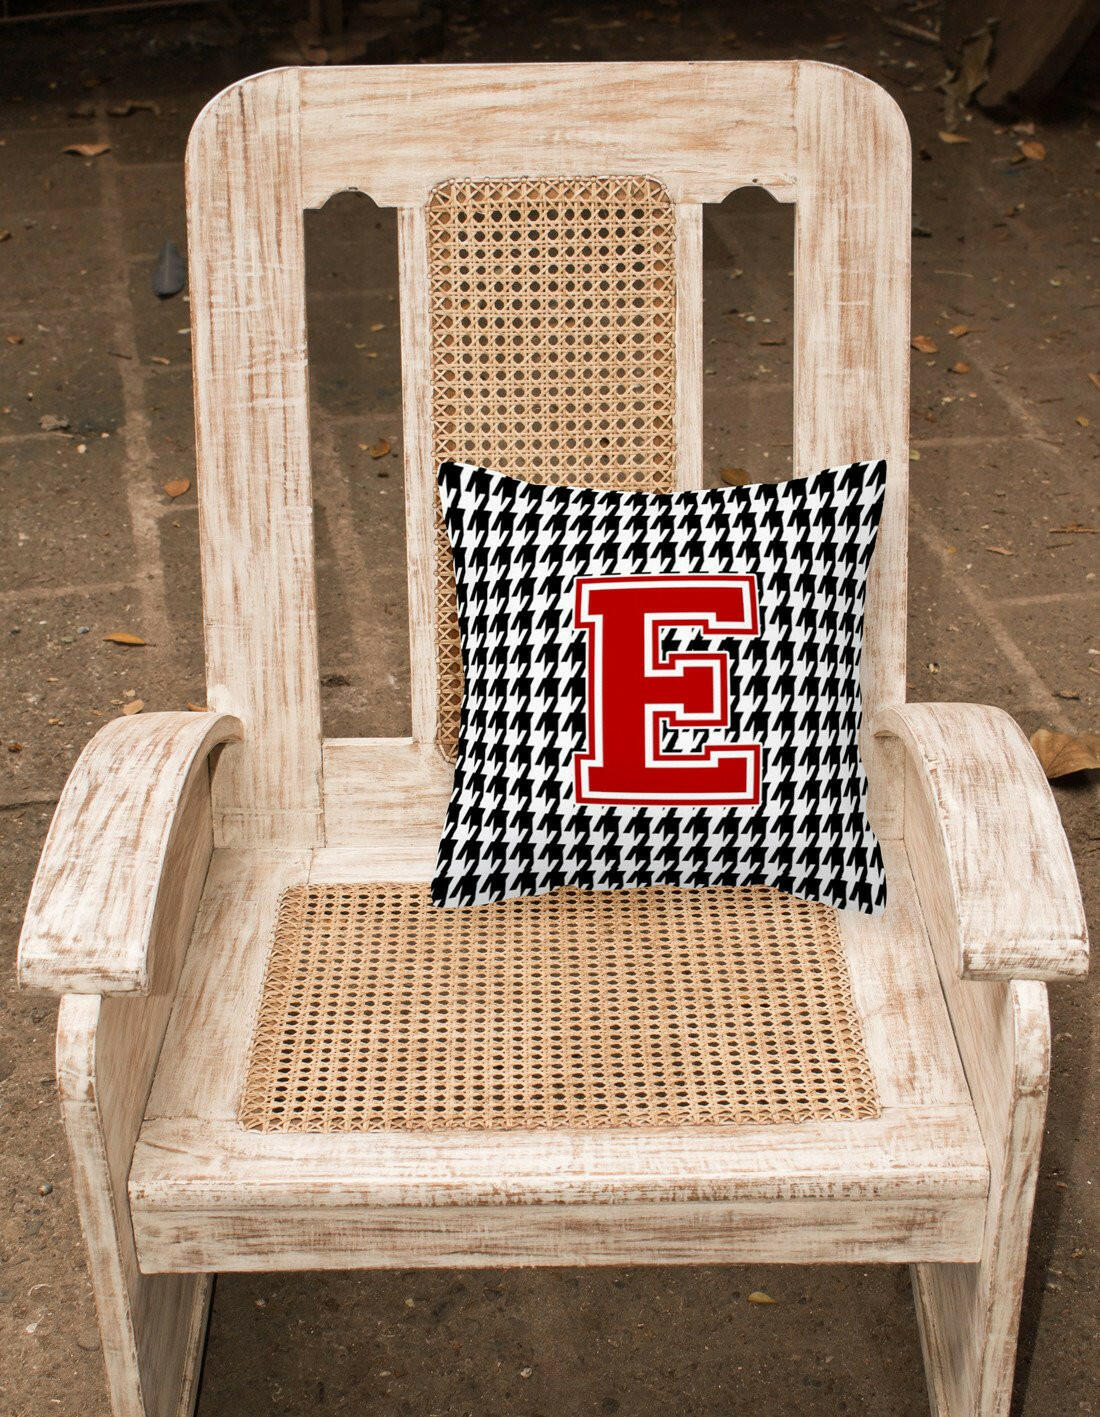 Monogram - Initial E Houndstooth Decorative   Canvas Fabric Pillow CJ1021 - the-store.com